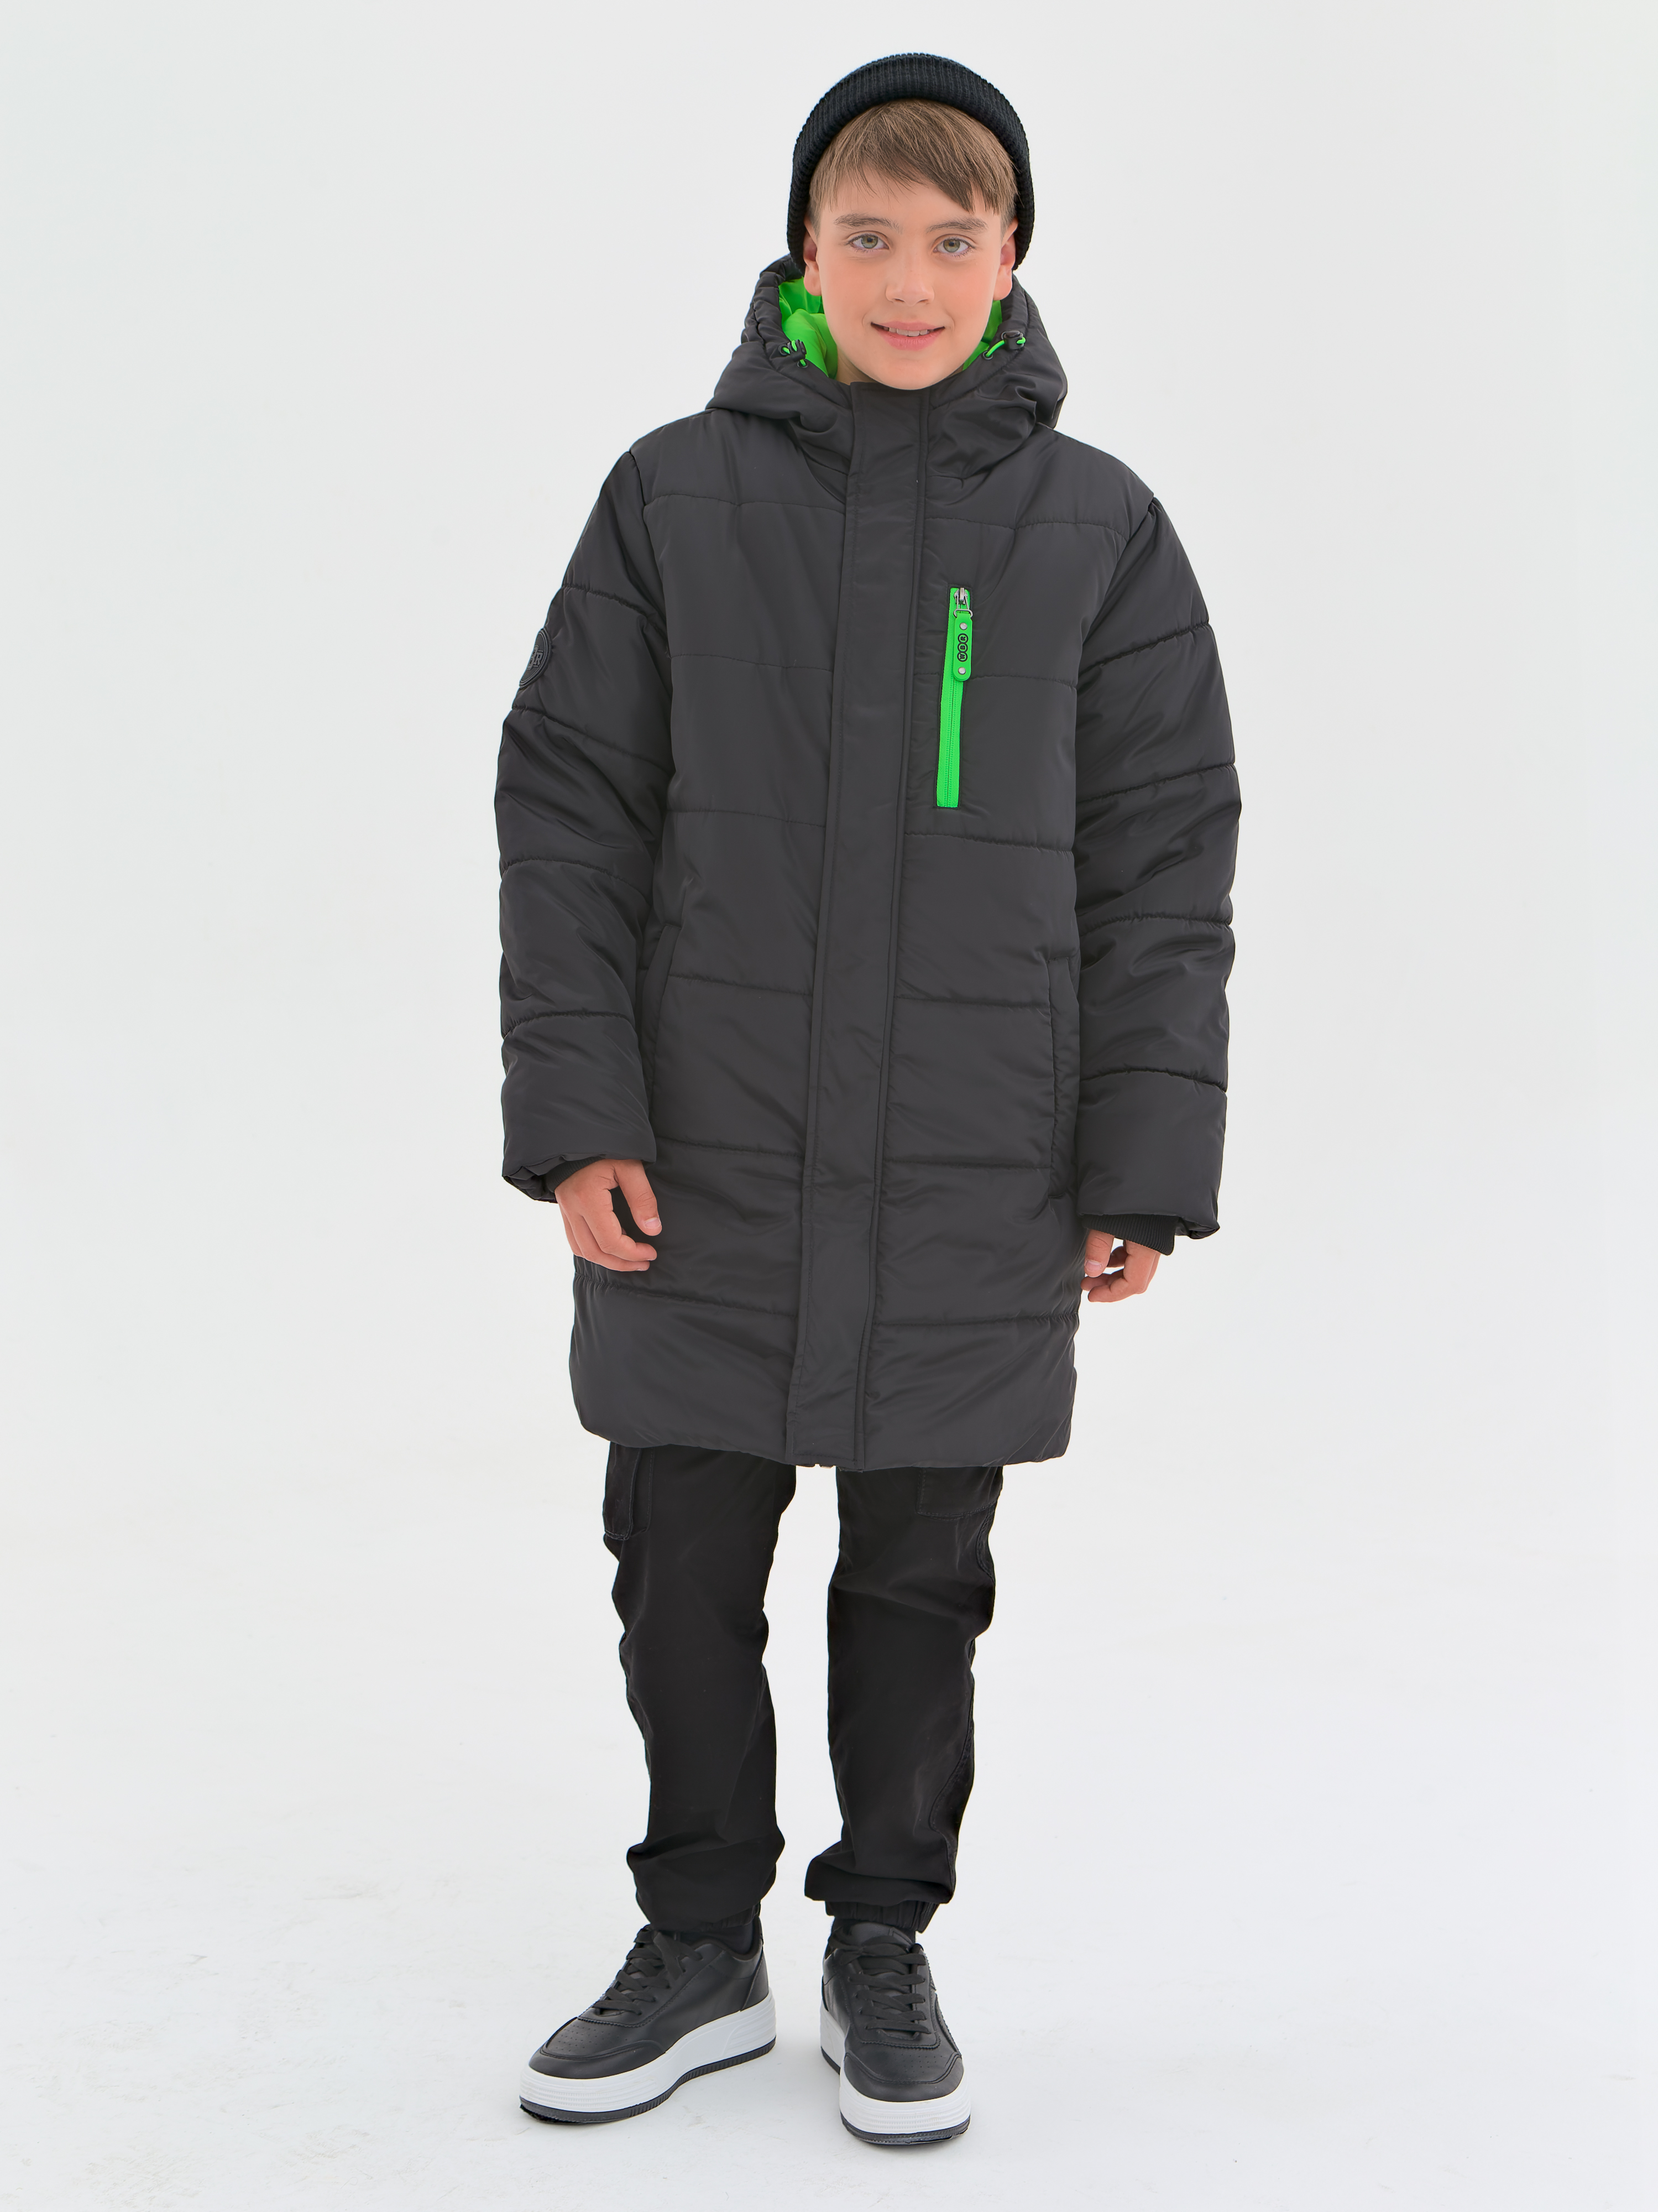 Пальто детское WBR 68-003, черный, 152 серое пальто пуховик herno детское